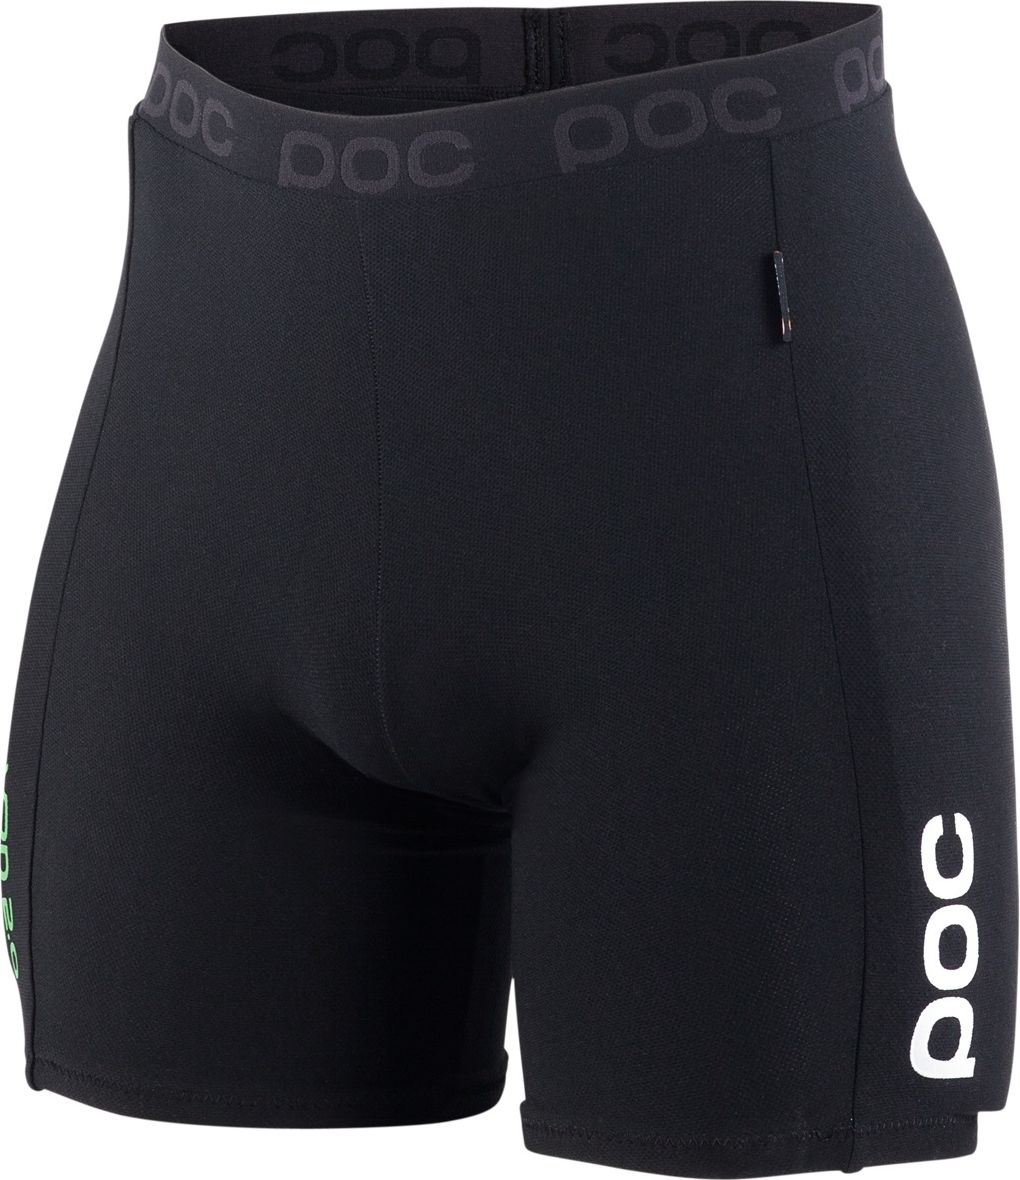 Hip VPD 2.0 Shorts Black | XS/S